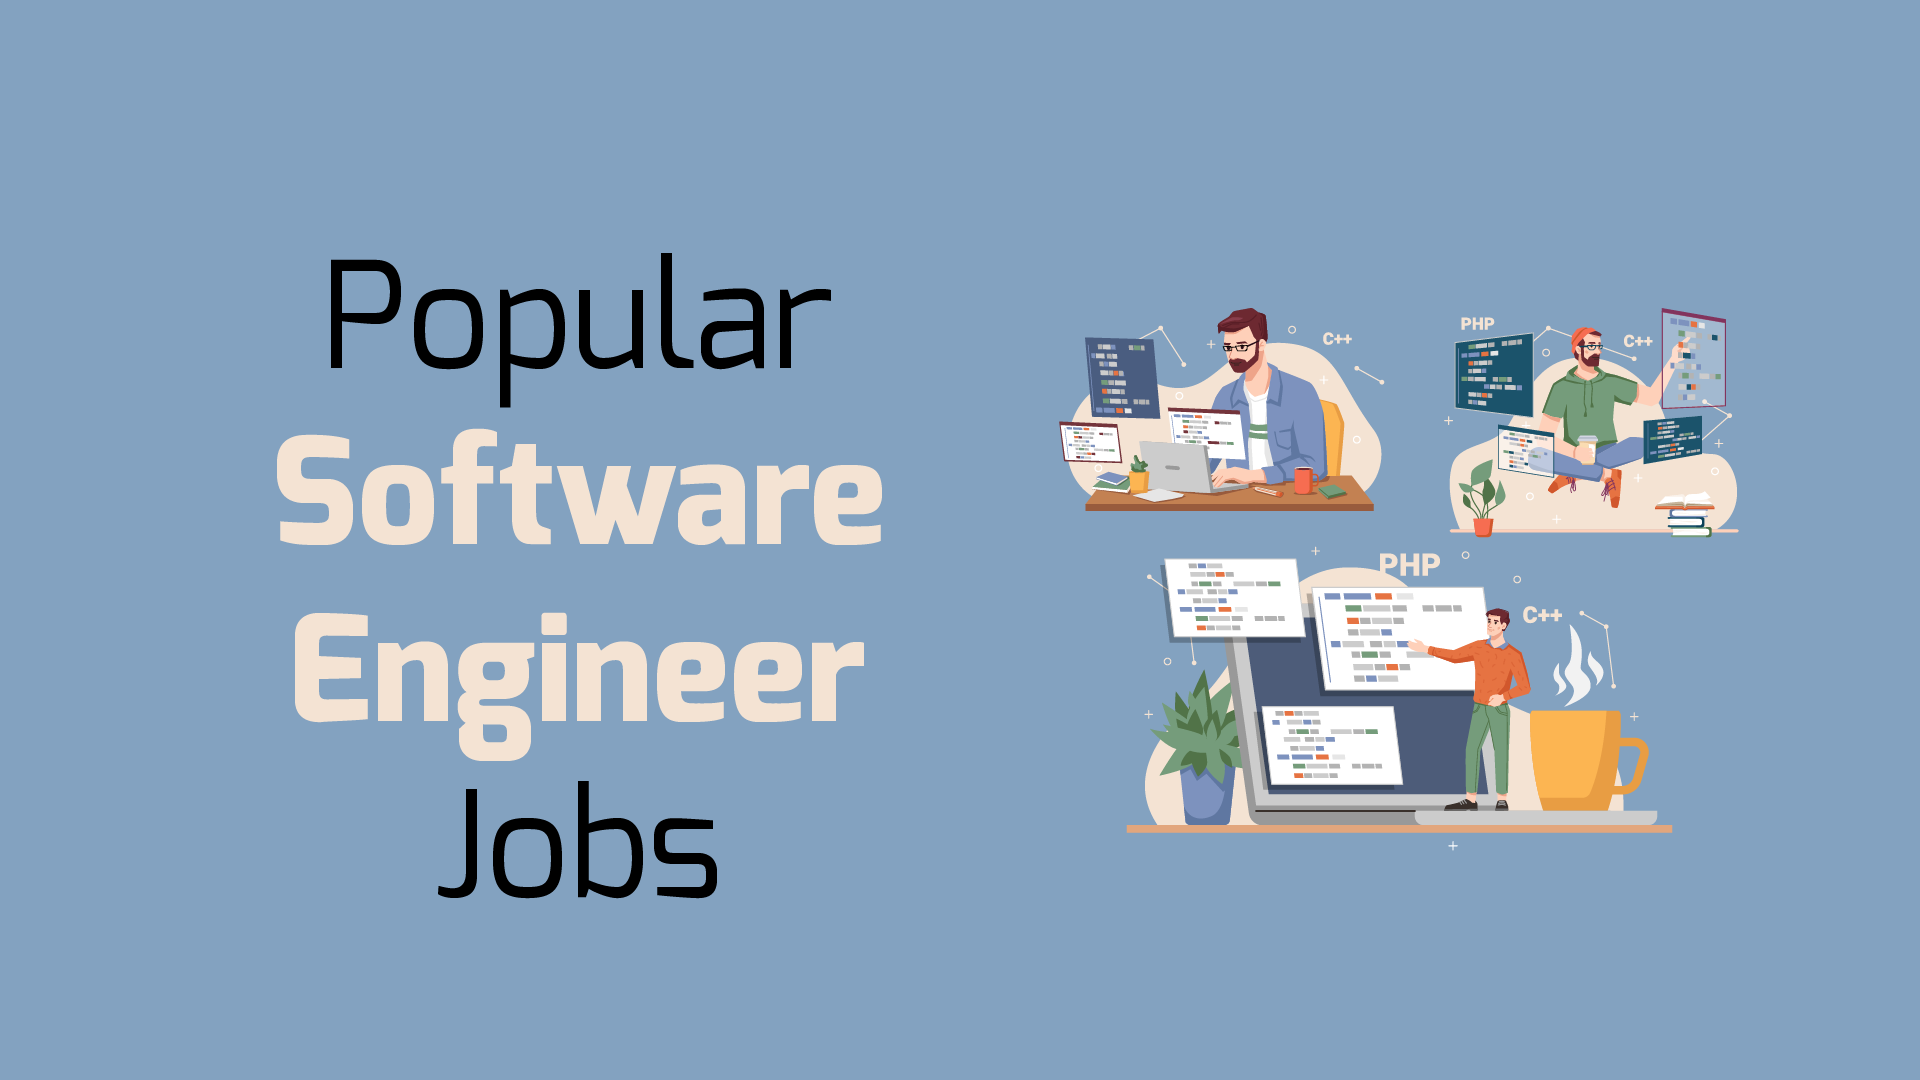 Popular Software Engineer Jobs